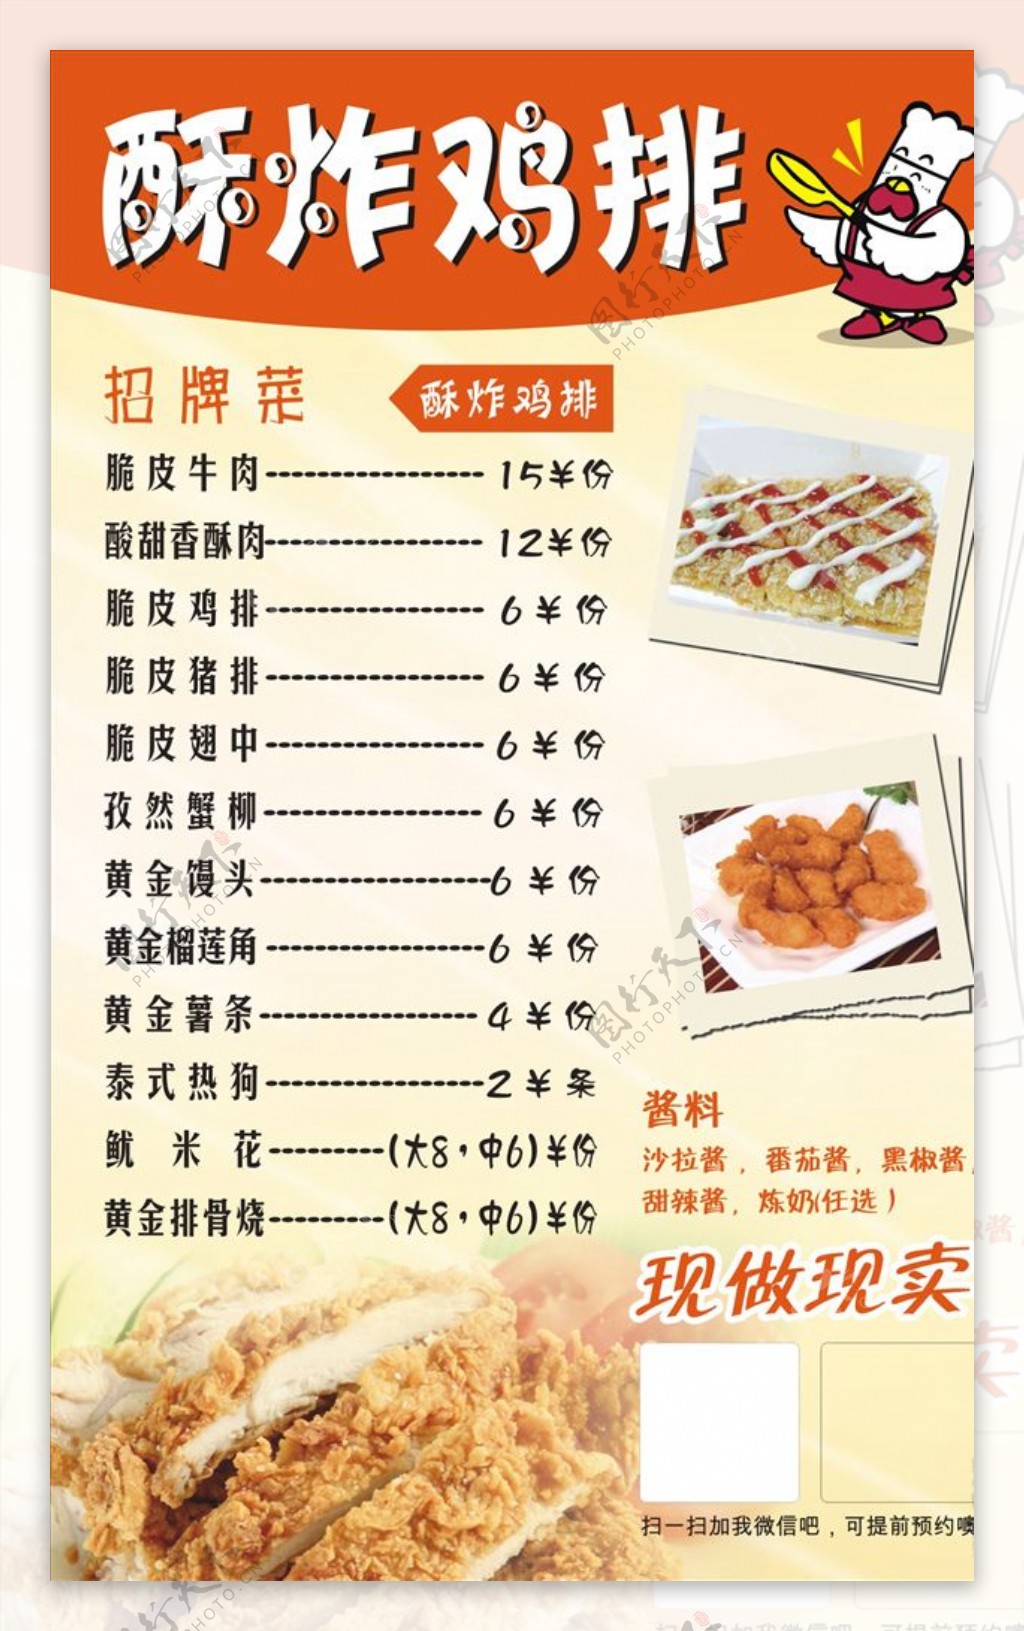 鸡排价格表炸串串菜单